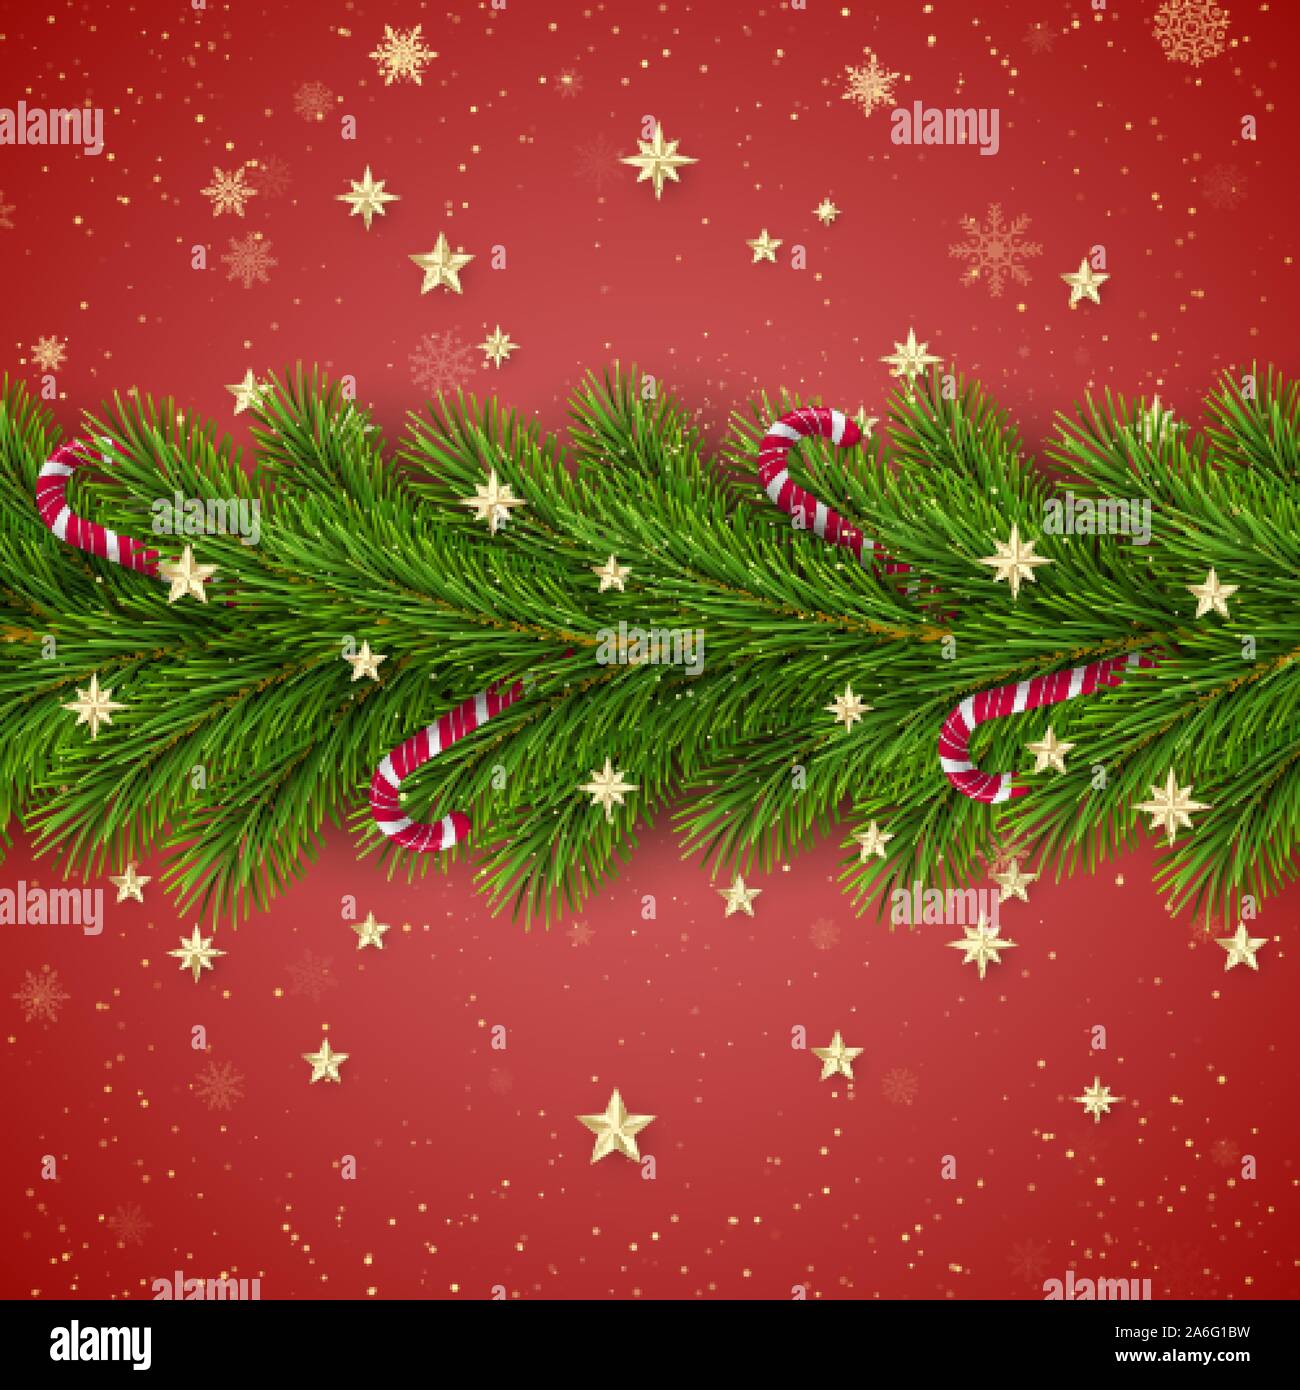 Buon Natale e Felice Anno Nuovo. Albero di Natale rami decorate con stelle dorate e fiocchi di neve e canne di caramella. Vacanze elemento di decorazione Illustrazione Vettoriale